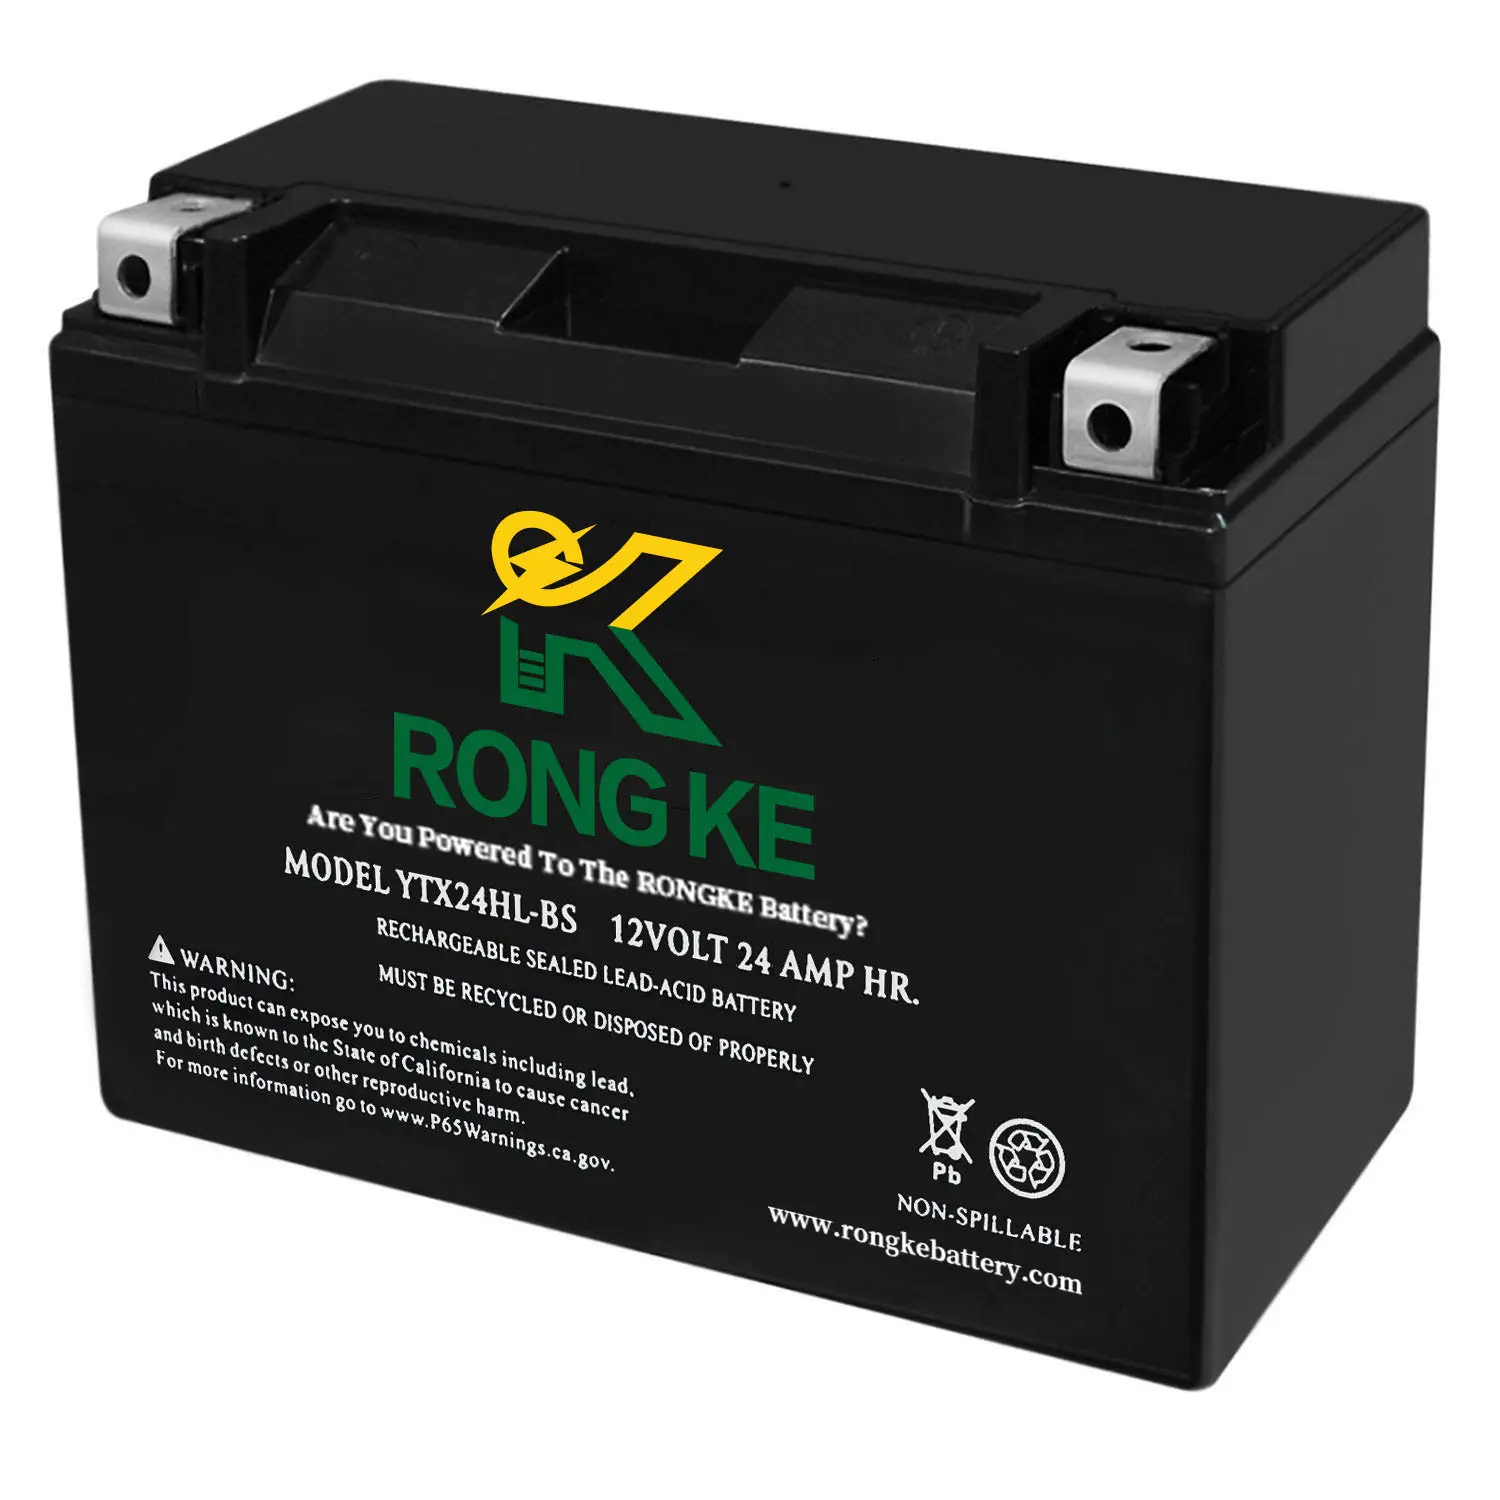 RONGKE nouvelle Production de batterie au plomb pour moto électrique 12v 24ah, nouvel arrivage de batterie au plomb pour démarrage de voiture